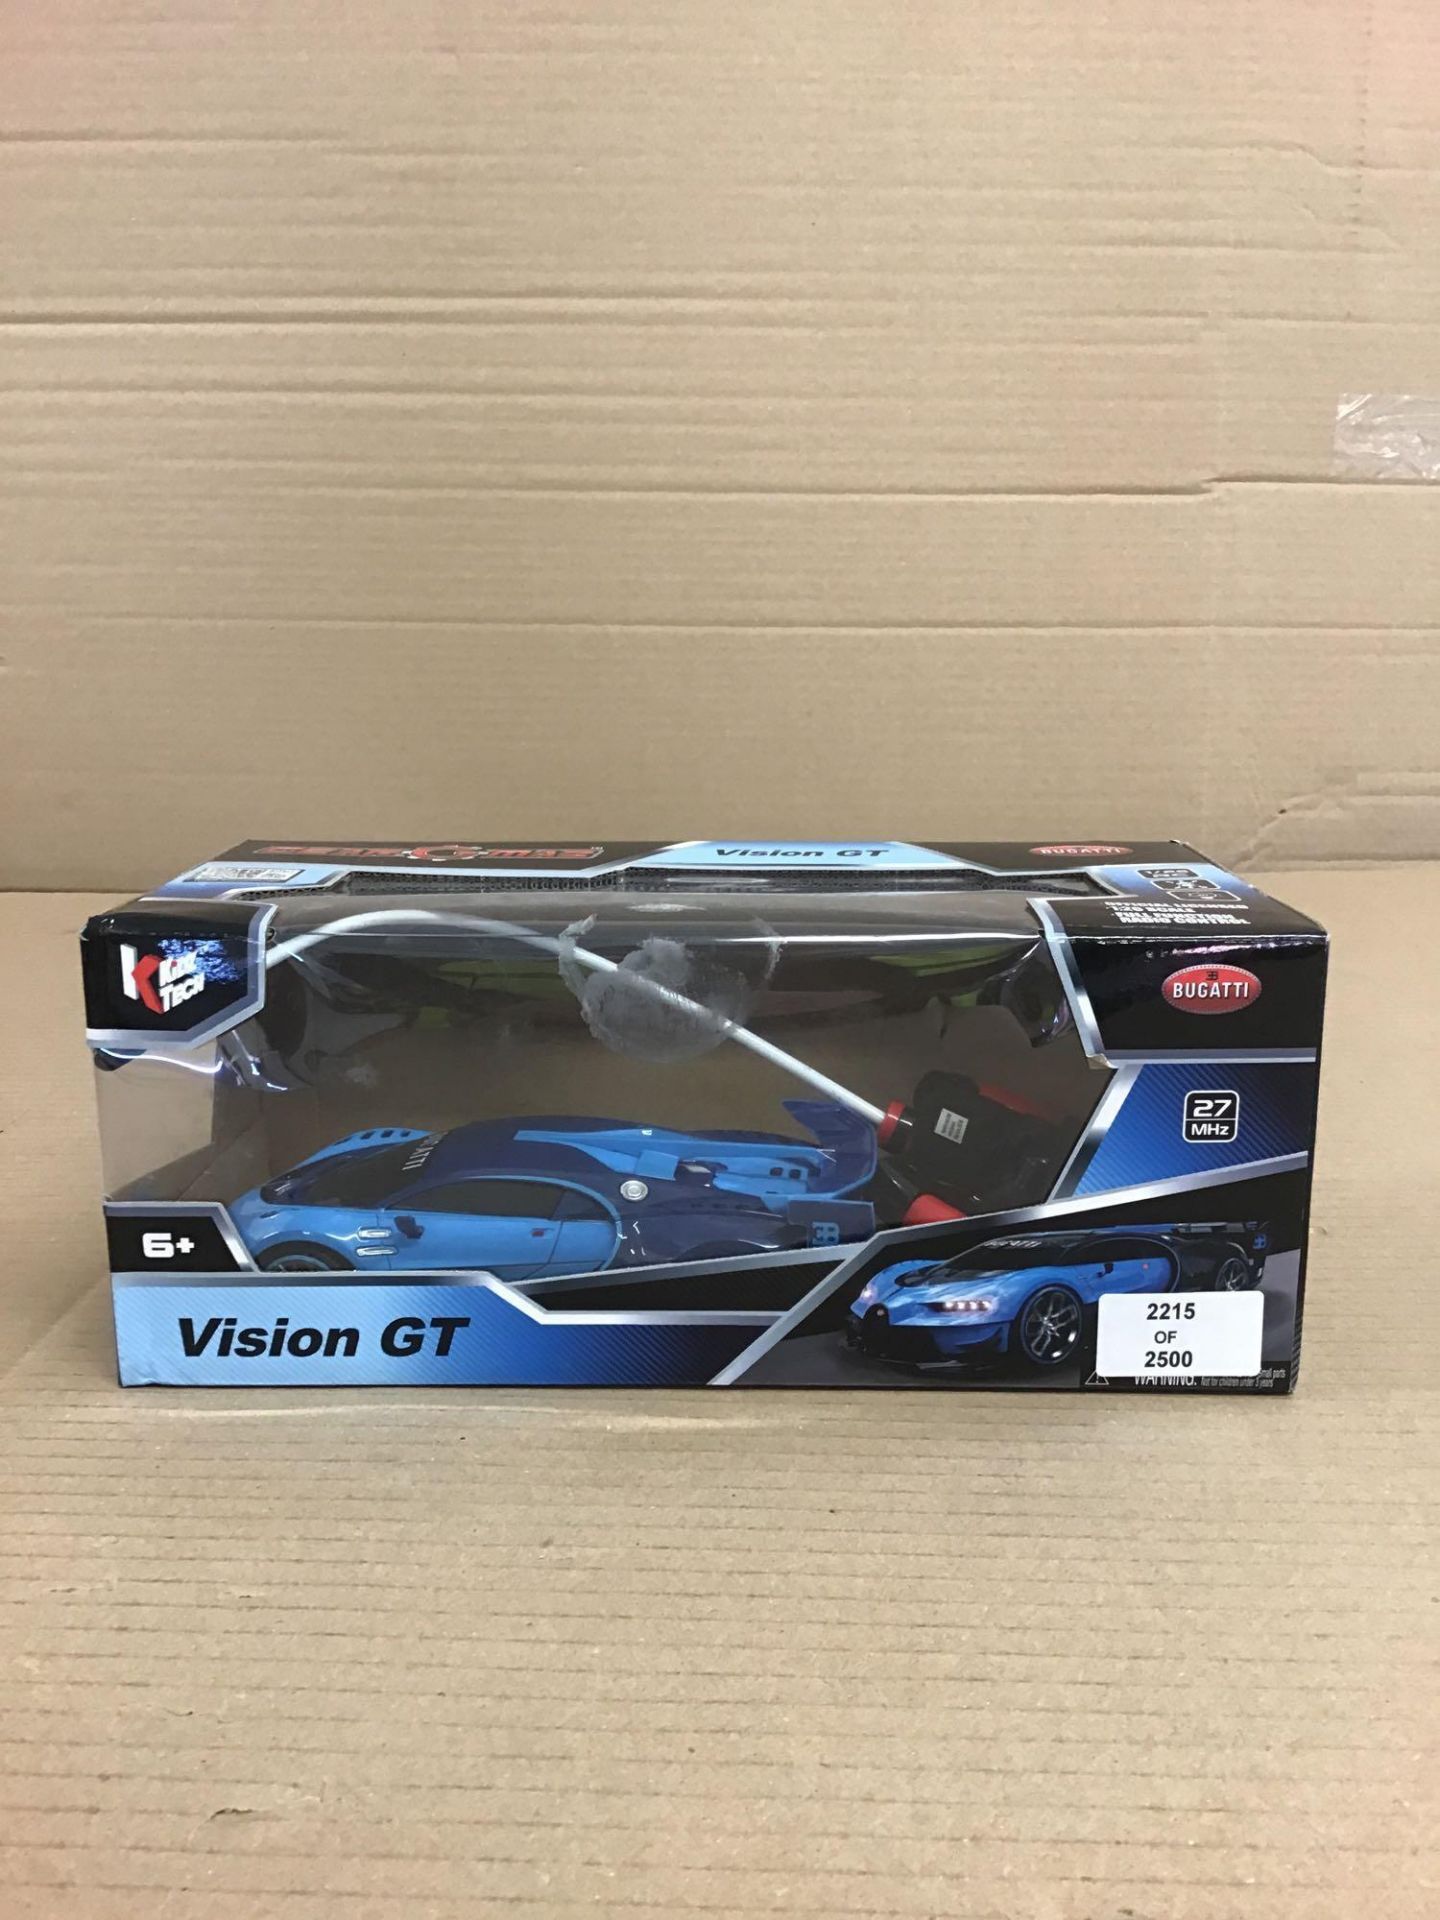 Gearmaz Radio Controlled Bugatti Vision GT 1:26, £12.99 RRP - Image 2 of 5